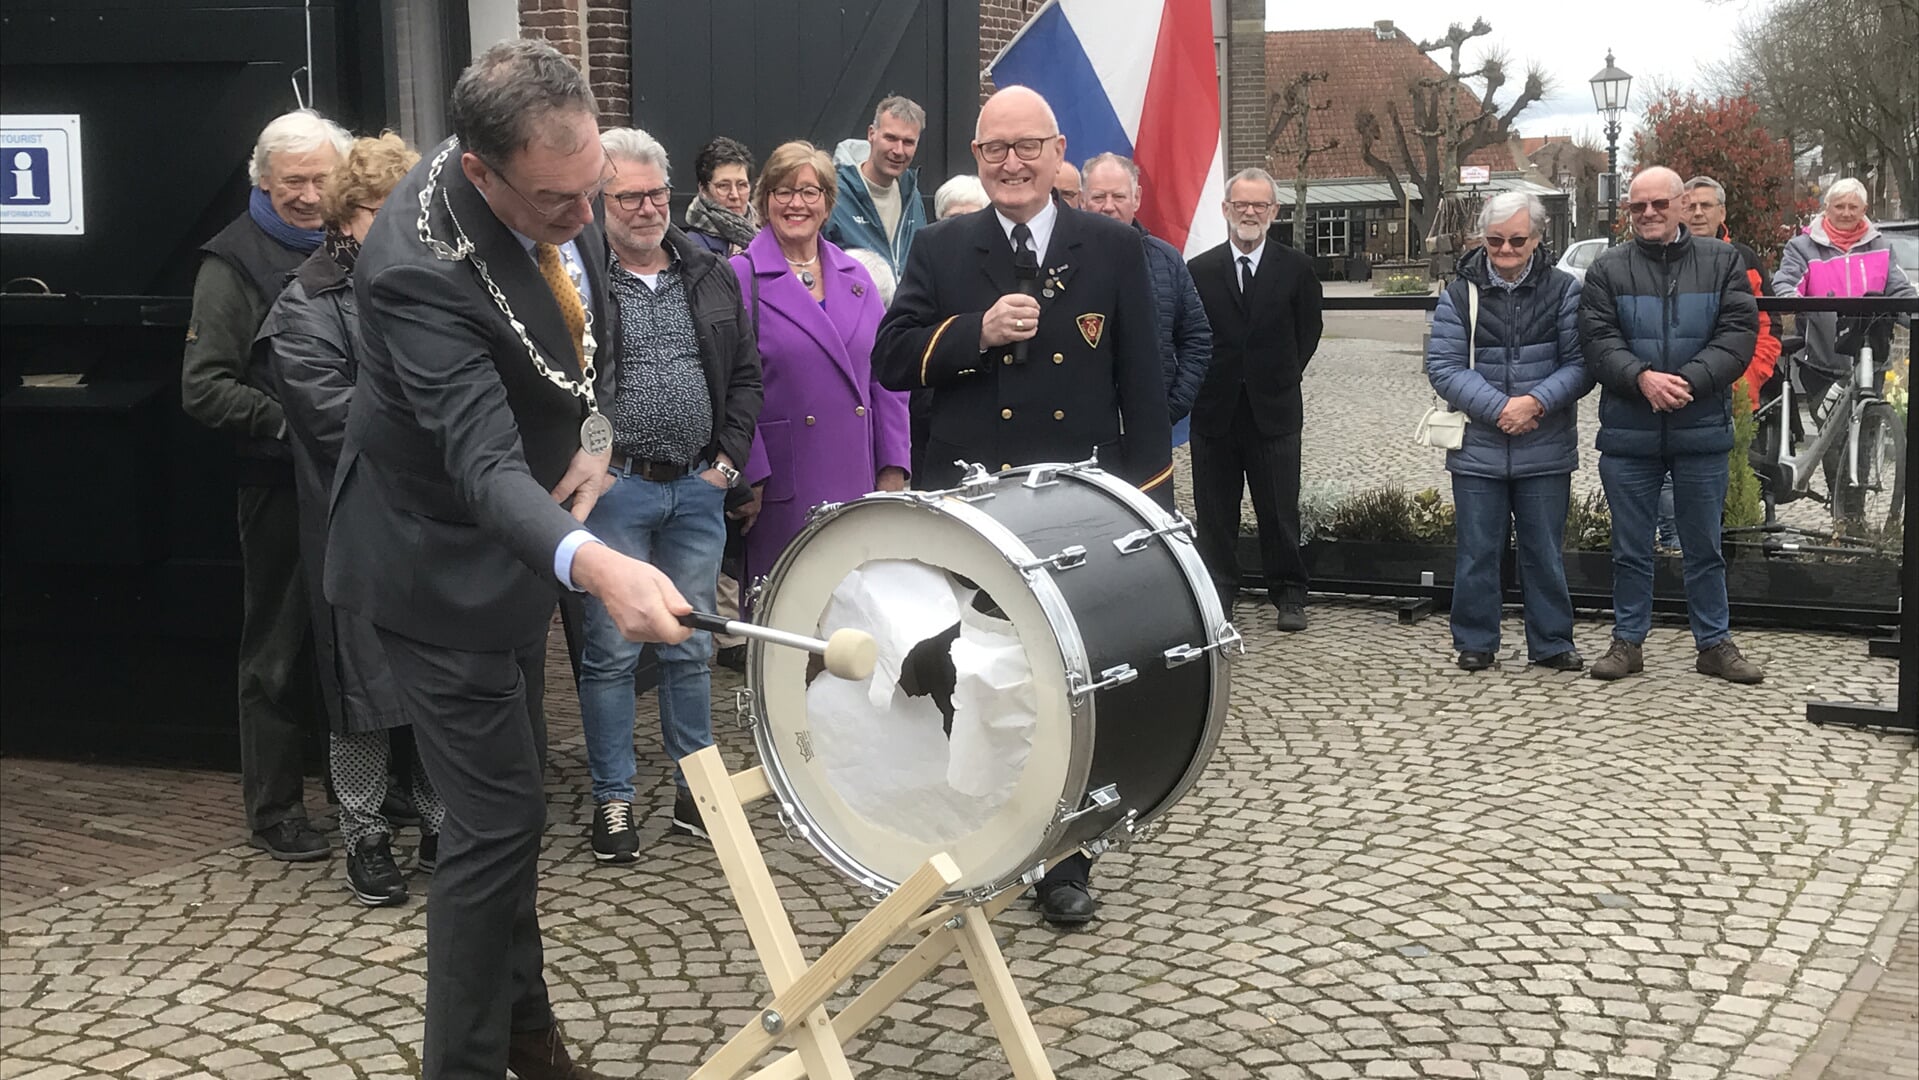 De opening van de fototentoonstelling over de drie jubilerende Liempdse organisaties in D'n Liempdsen Herd, werd zaterdagmiddag op ludieke wijze geopend door burgemeester Ronald van Meygaarden.